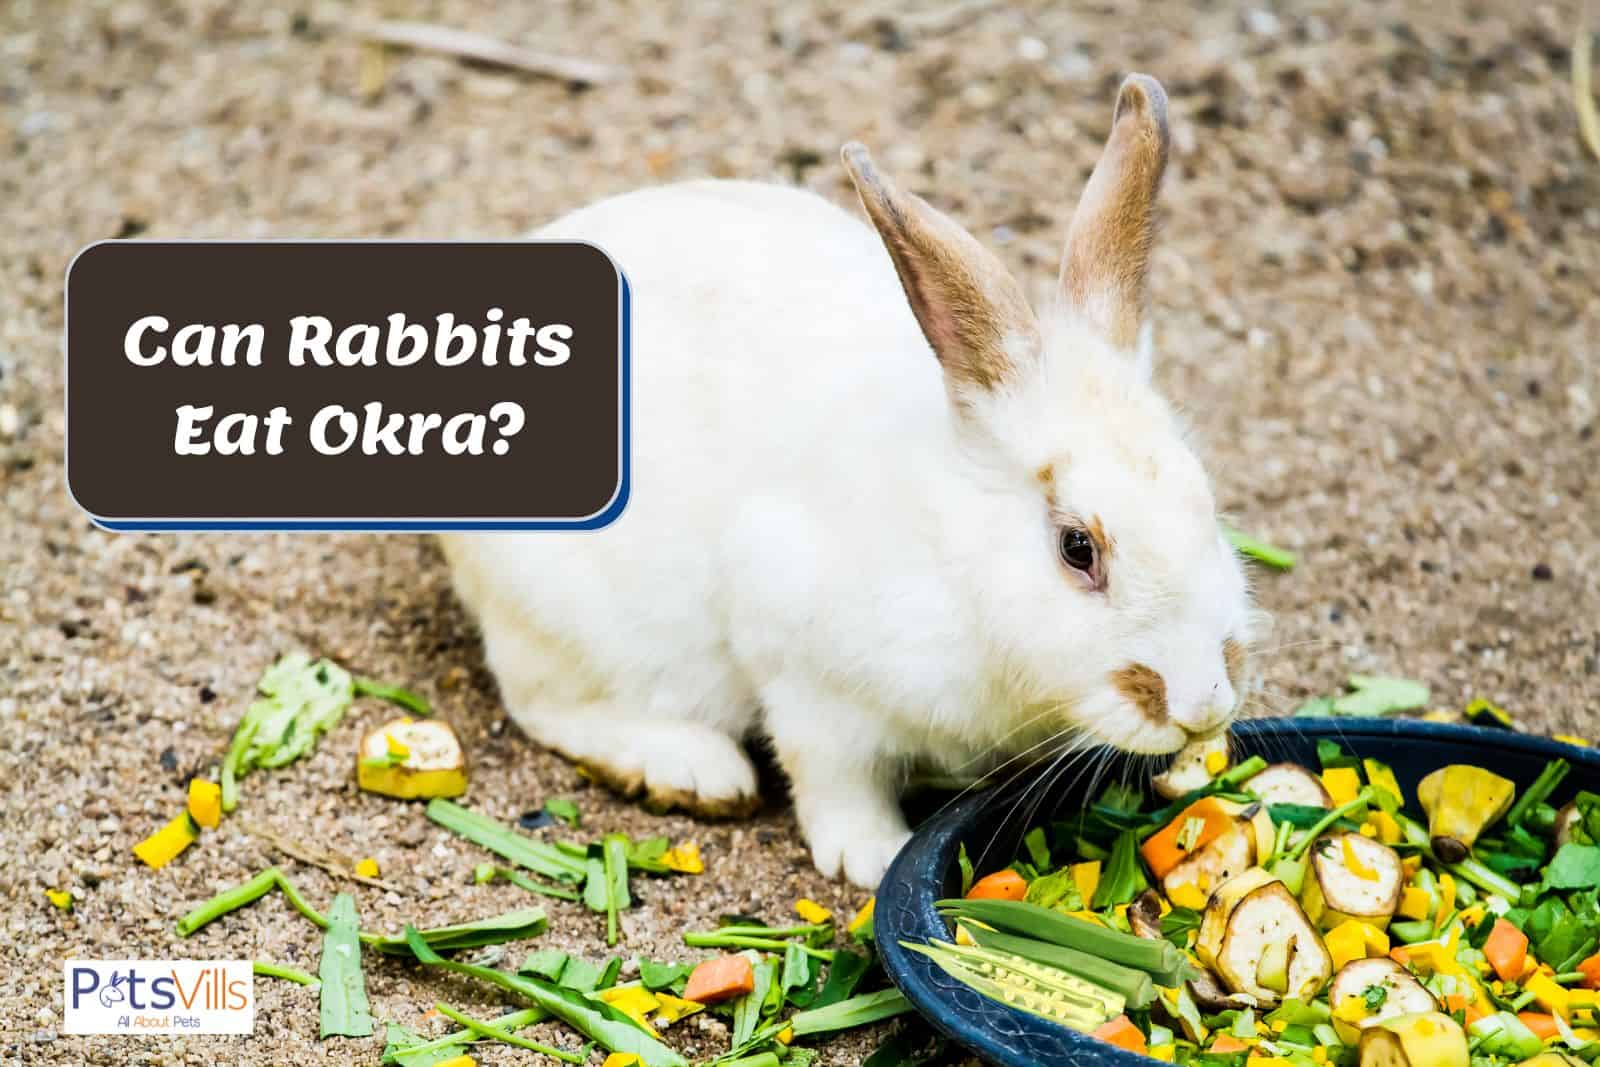 rabbit waving at okra but can rabbits eat okra